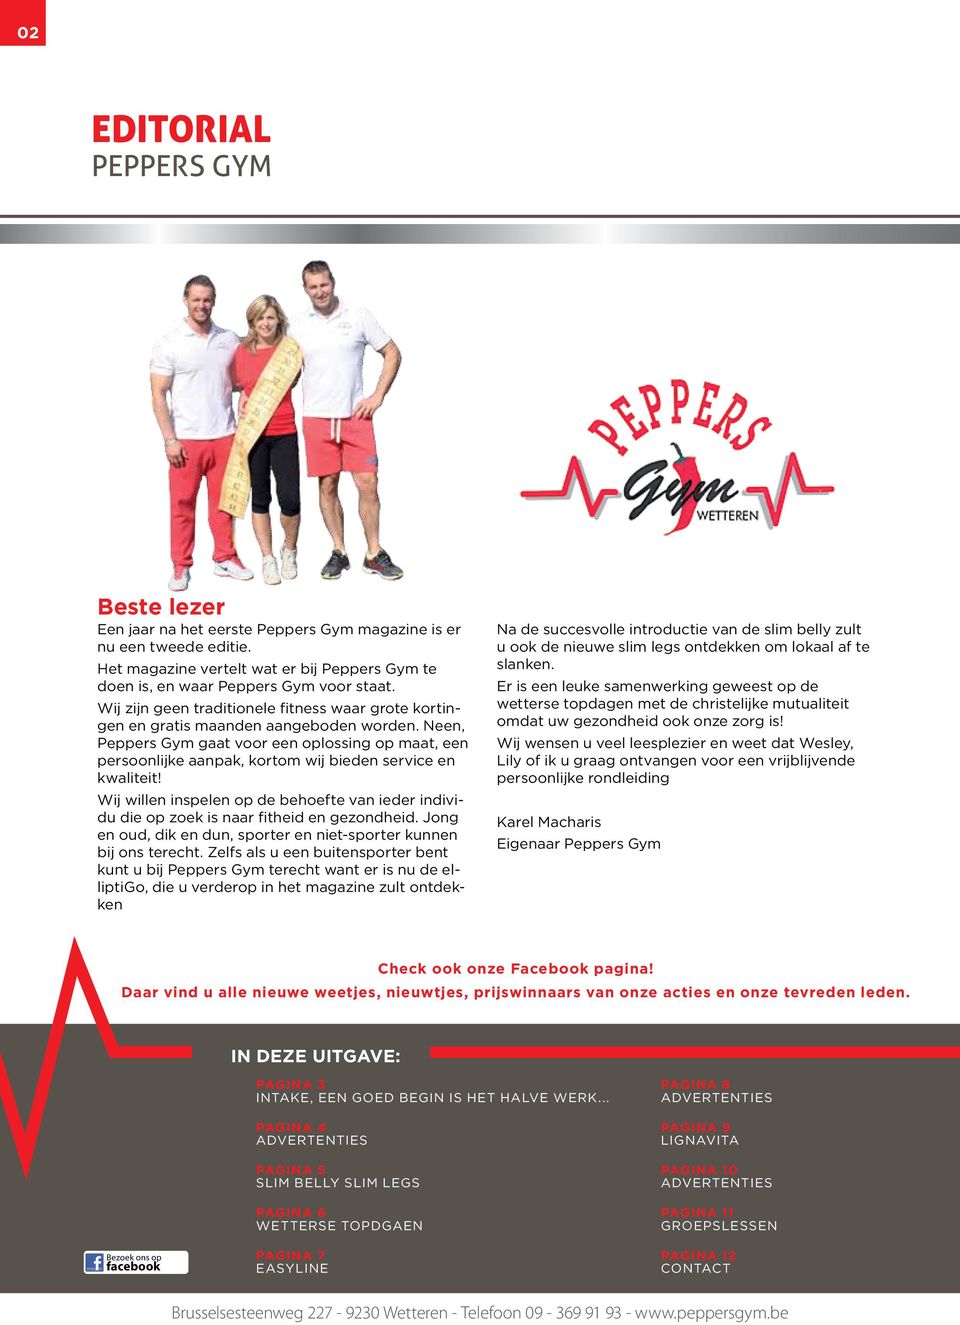 Neen, Peppers Gym gaat voor een oplossing op maat, een persoonlijke aanpak, kortom wij bieden service en kwaliteit!